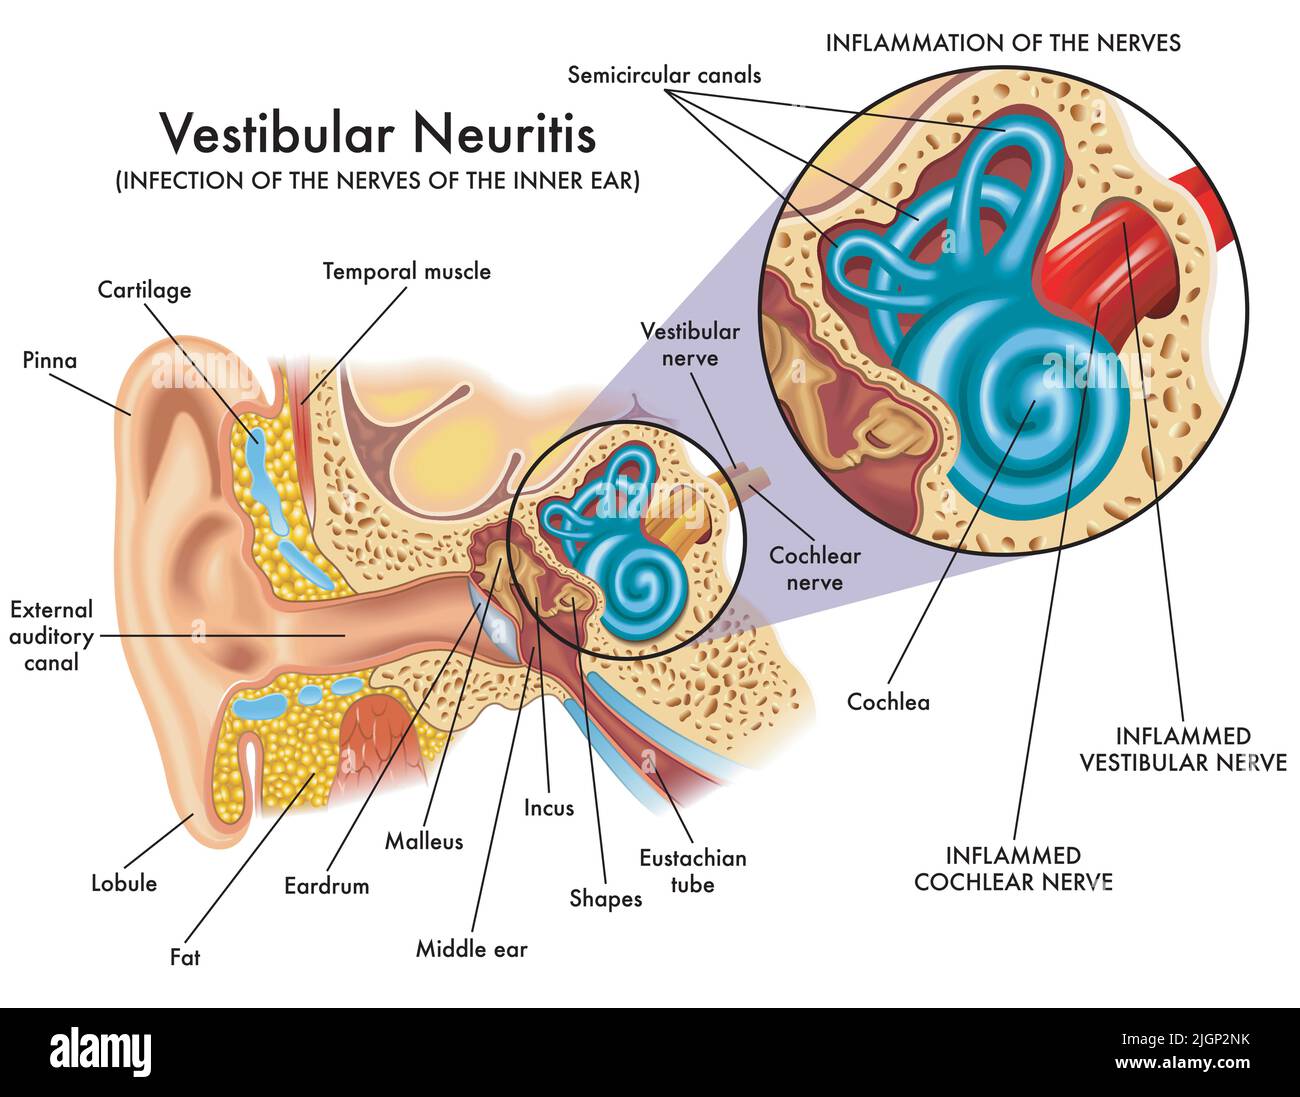 Medizinische Illustration zeigt die Infektion und Entzündung der Nerven des Innenohrs, genannt vestibuläre Neuritis, mit Anmerkungen. Stock Vektor